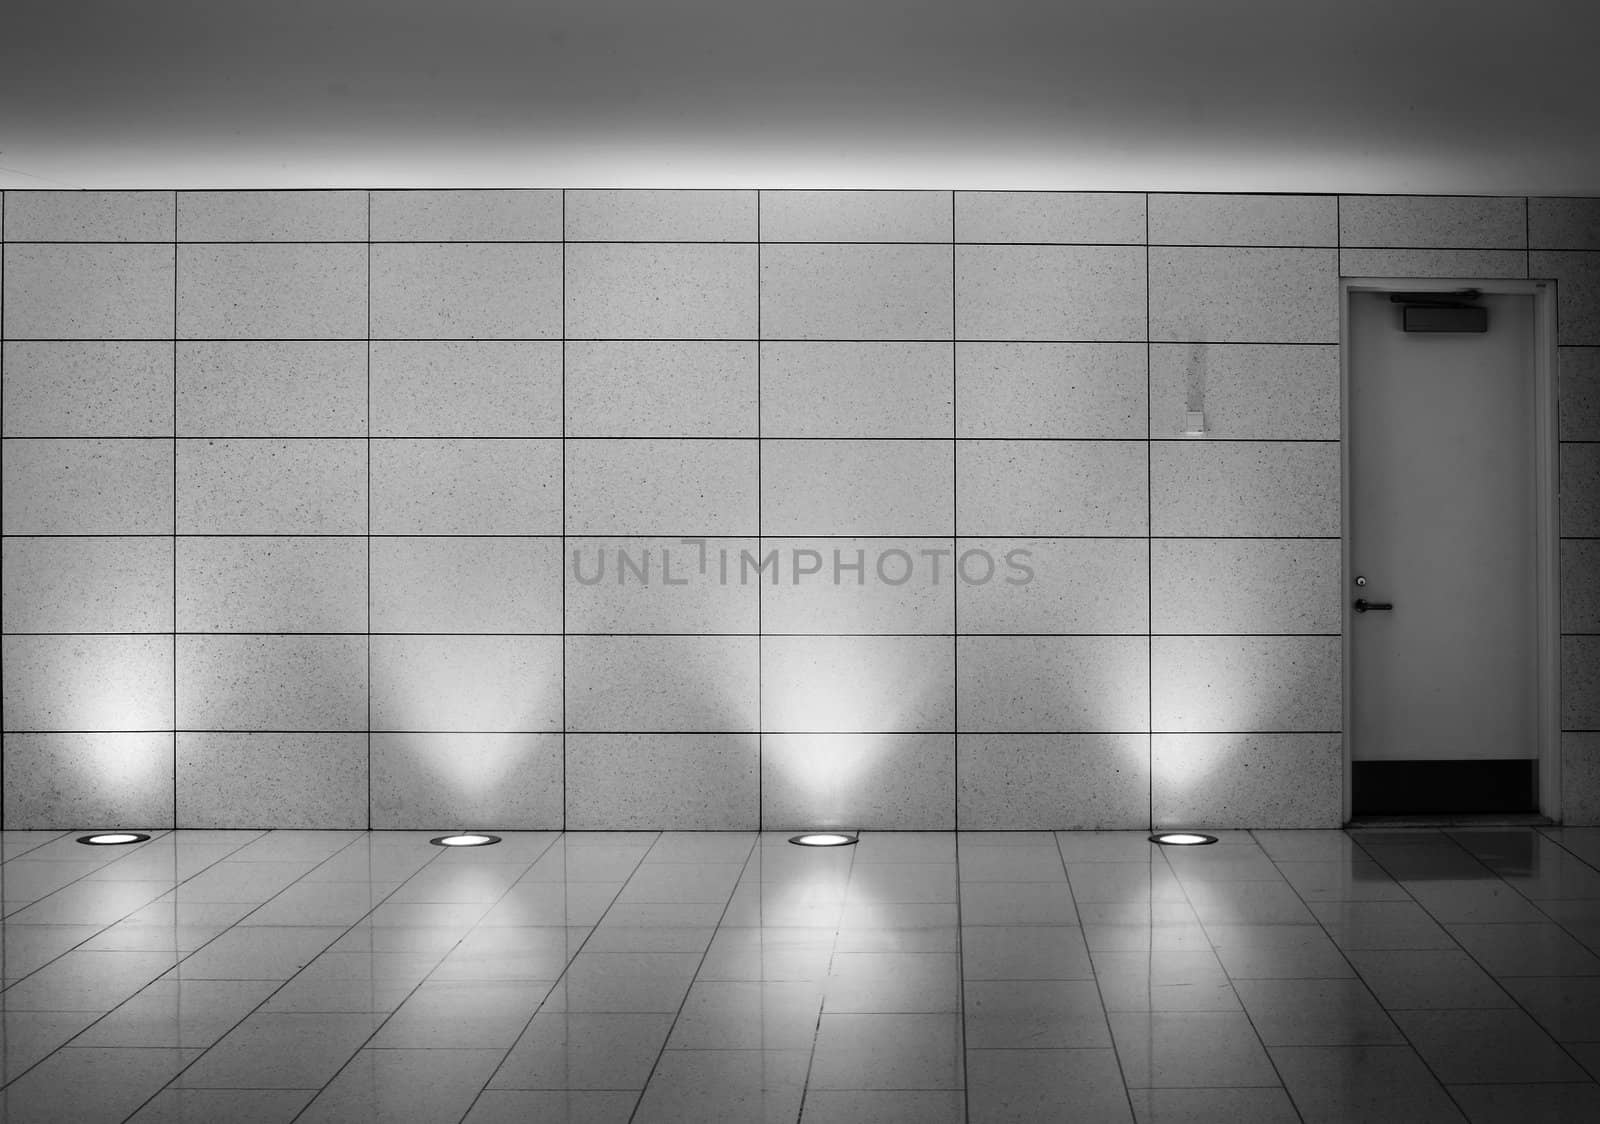 walls and door in an underground montreal metro corridor
 by aetb